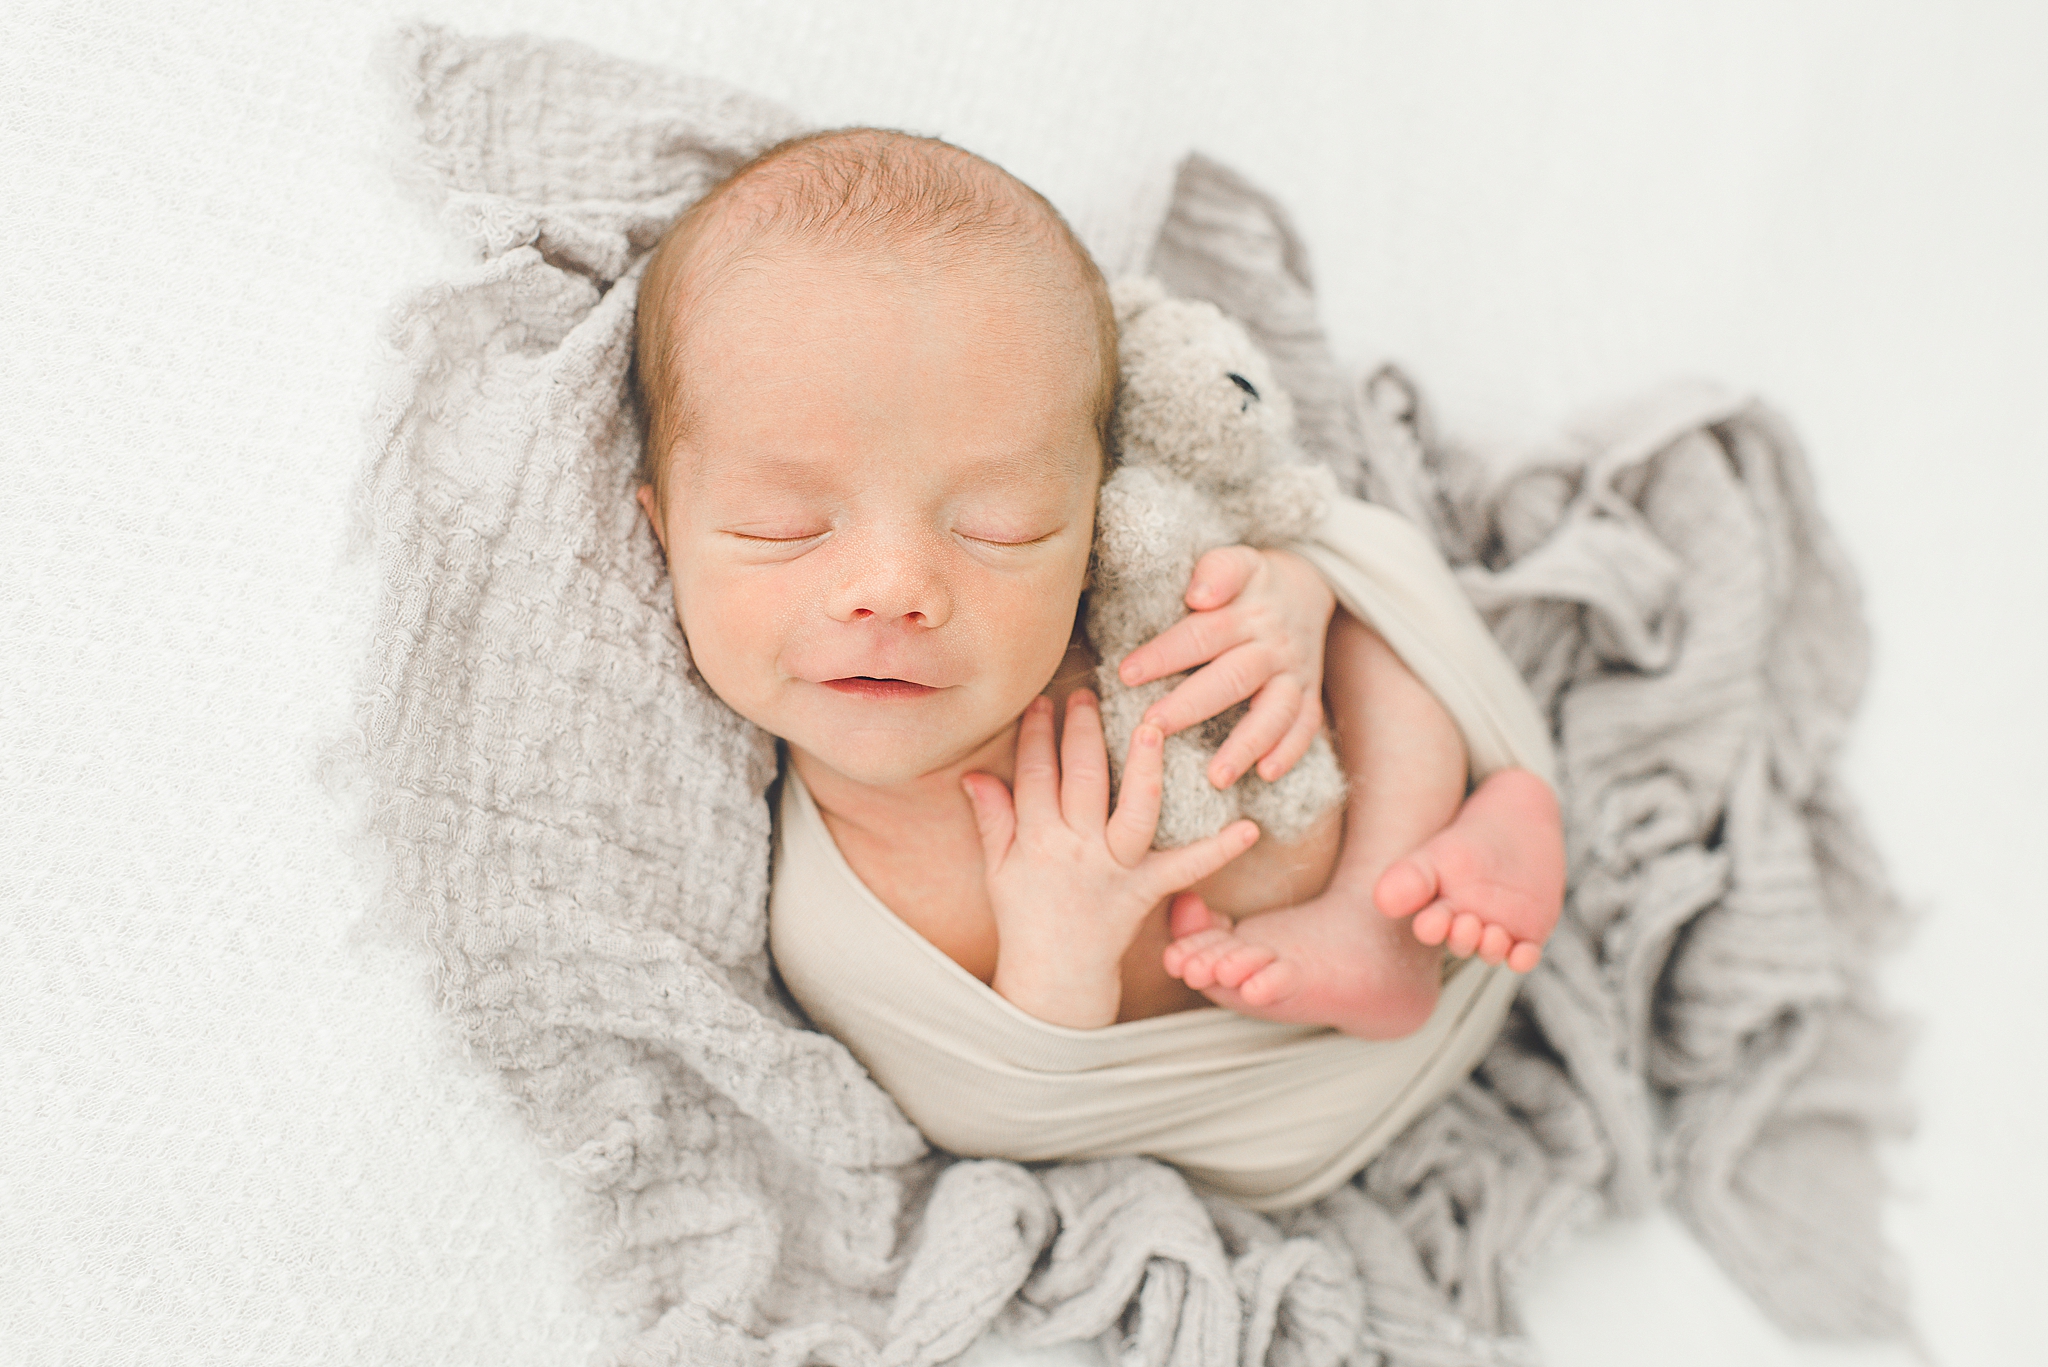 Cincinnati Newborn Photographer | Baby Kyle